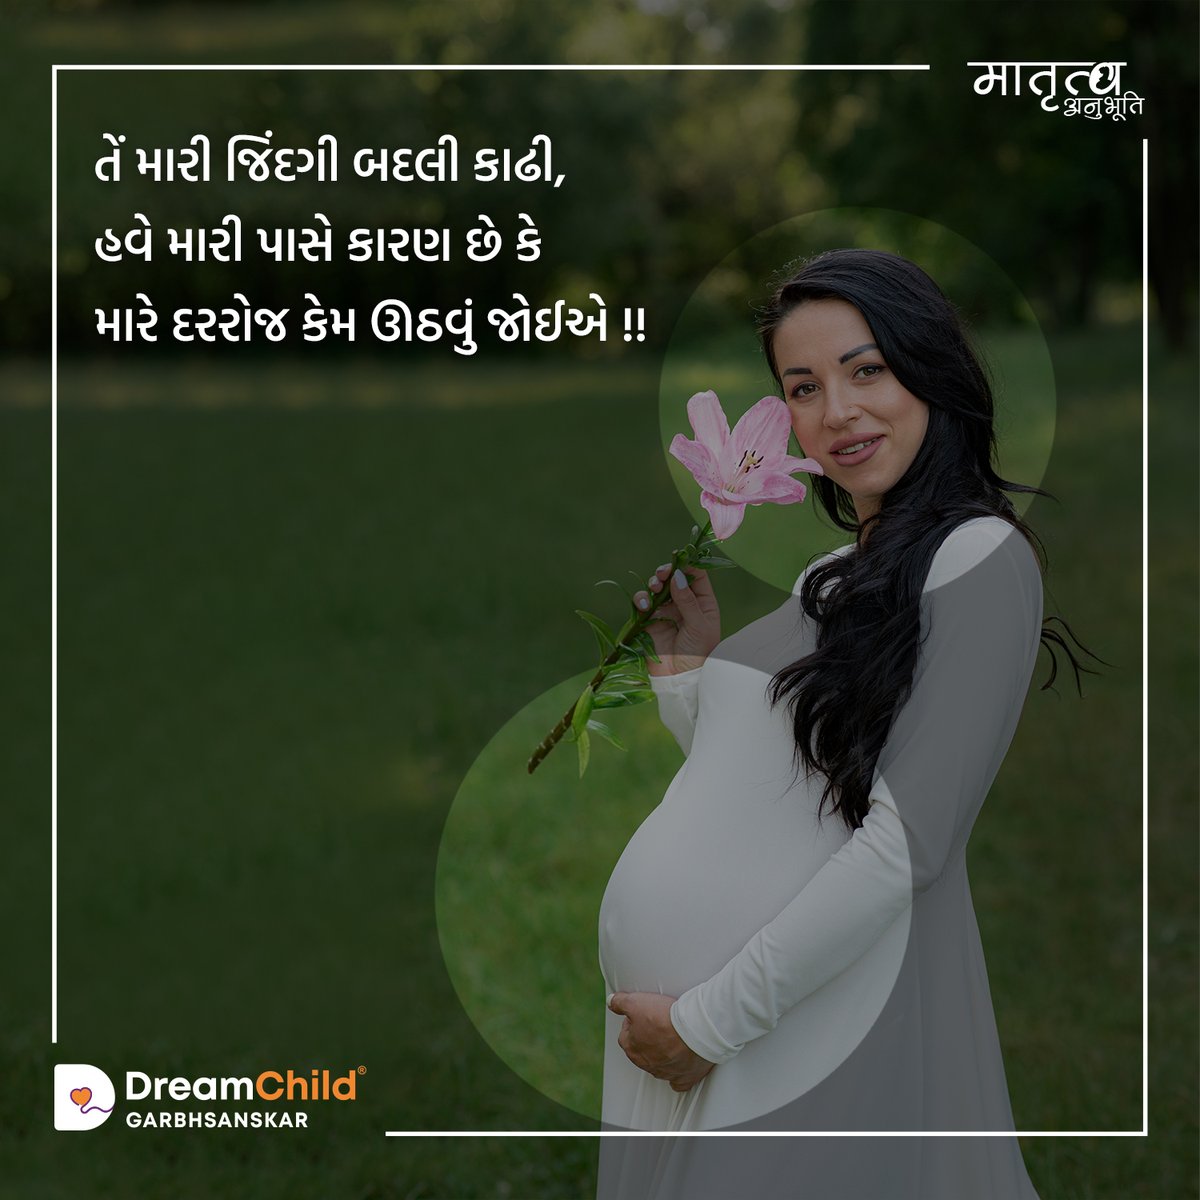 સ્નેહસભર સંતાન પ્રેમ દર્શાવતાં માતૃત્વ અનુભૂતિ વાક્યો. - માતૃત્વ અનુભૂતિ વાક્ય – 👉🏻 Monday for Mothers!! #motherhood #children #love #mum #beautiful #motherlove #pregnancy #pregnant #dreamchild #garbhsanskar #dreamchildapp